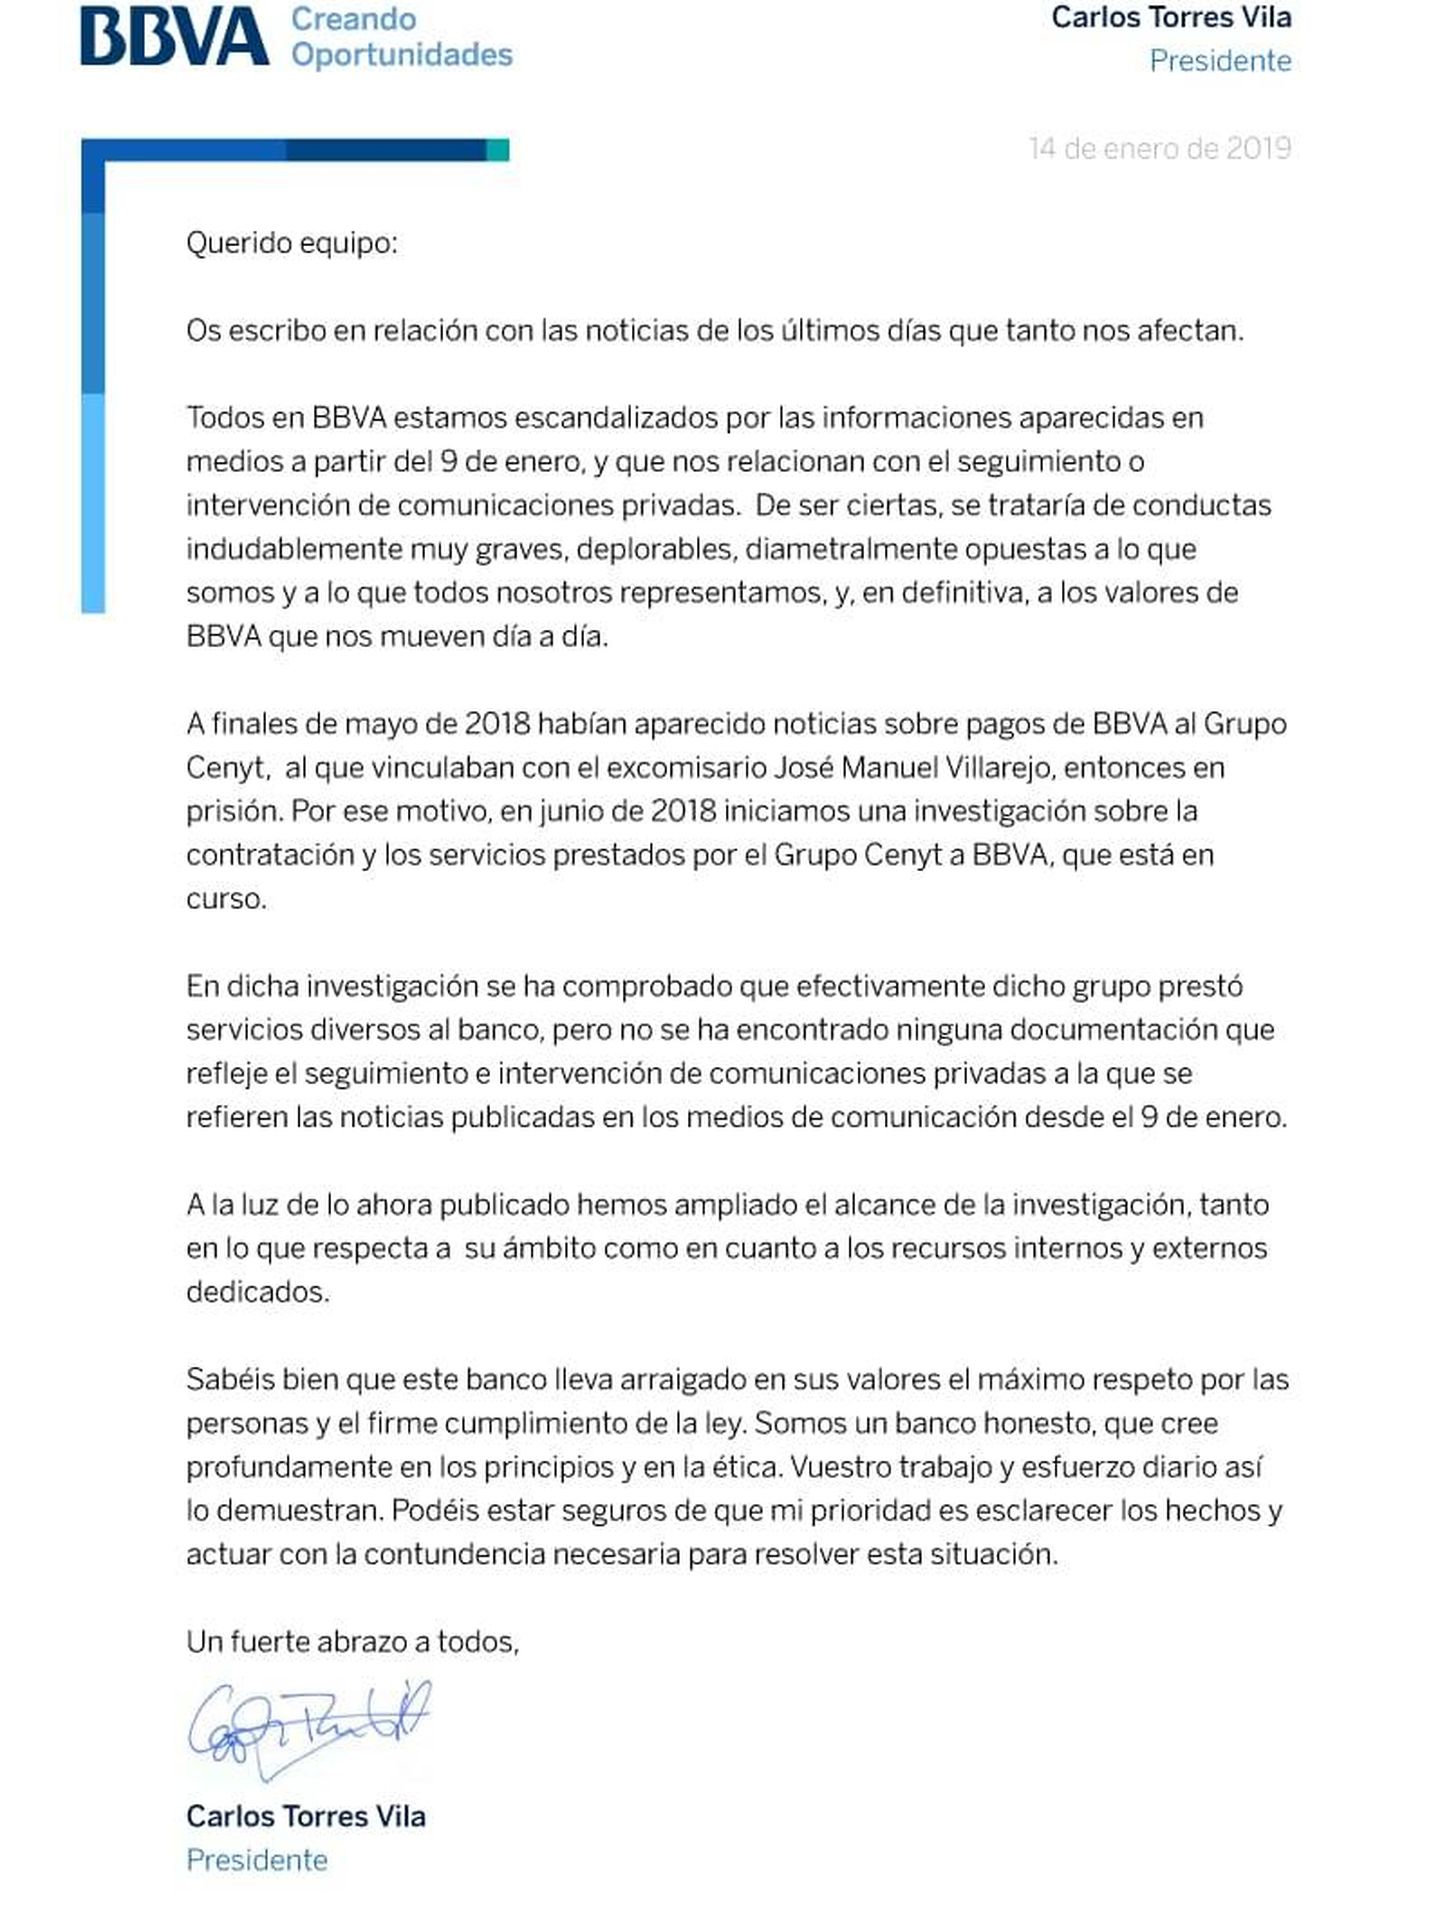 Carta enviada por Carlos Torres Vila a los empleados de BBVA